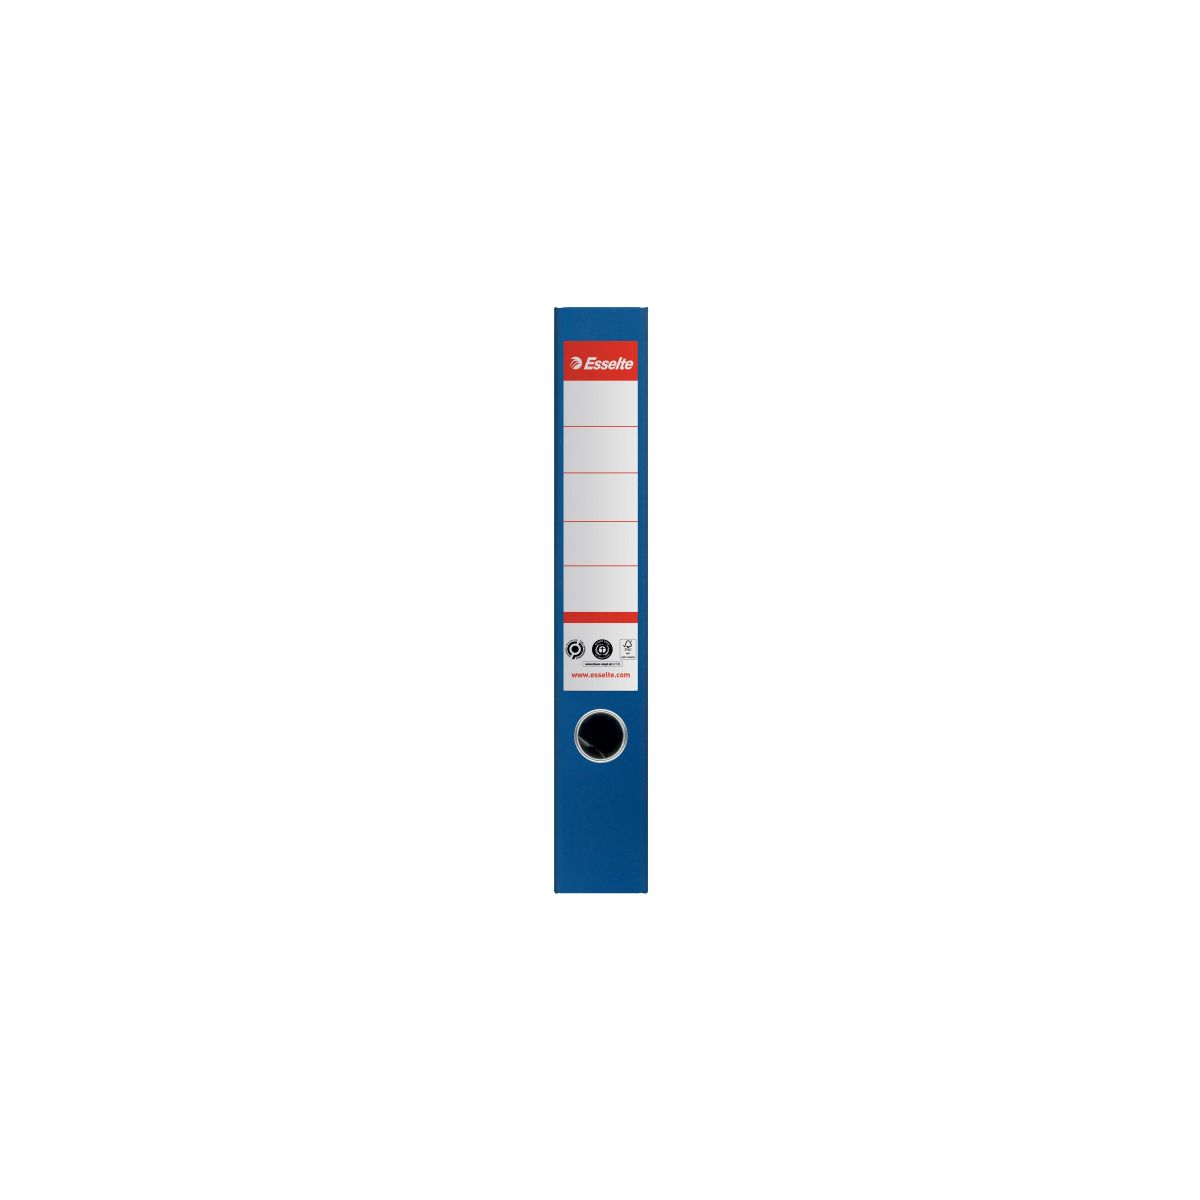 Segregator dźwigniowy Esselte No.1 neutralny pod względem emisji CO2 A4 50mm niebieski (627572)